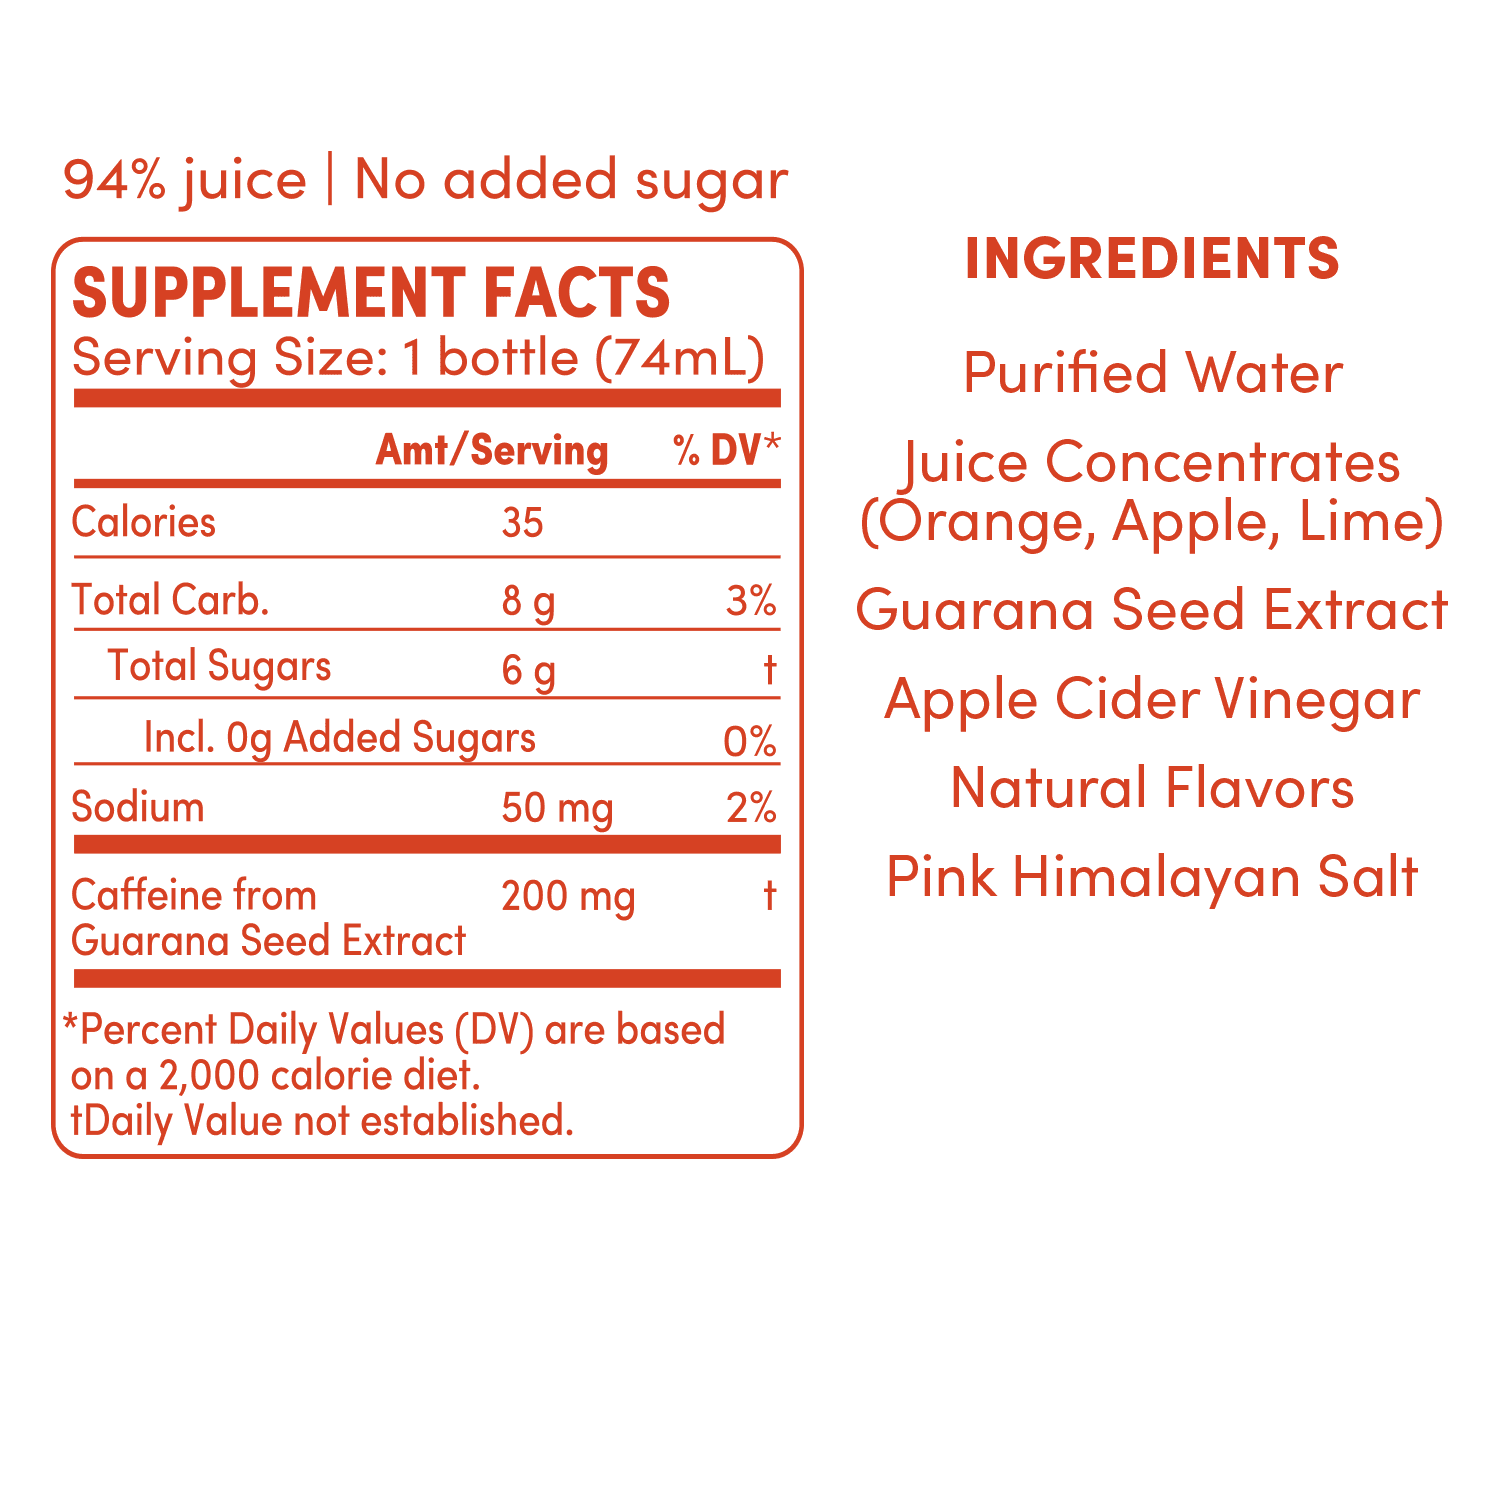 GO BIG blood orange ginger supplement facts